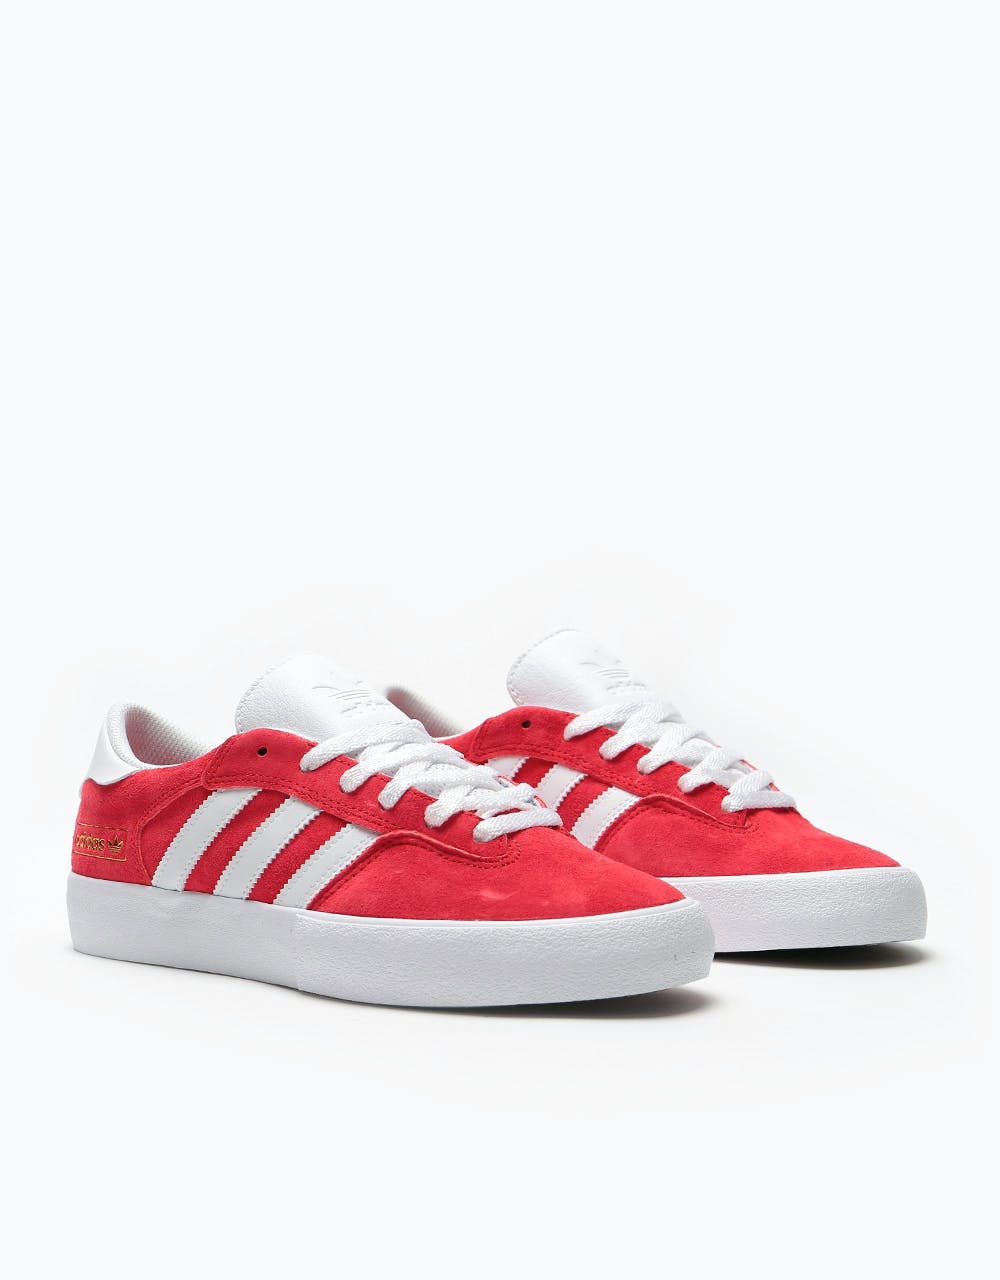 Adidas Matchbreak Super Skate Shoes - Scarlet/White/Gold Metallic